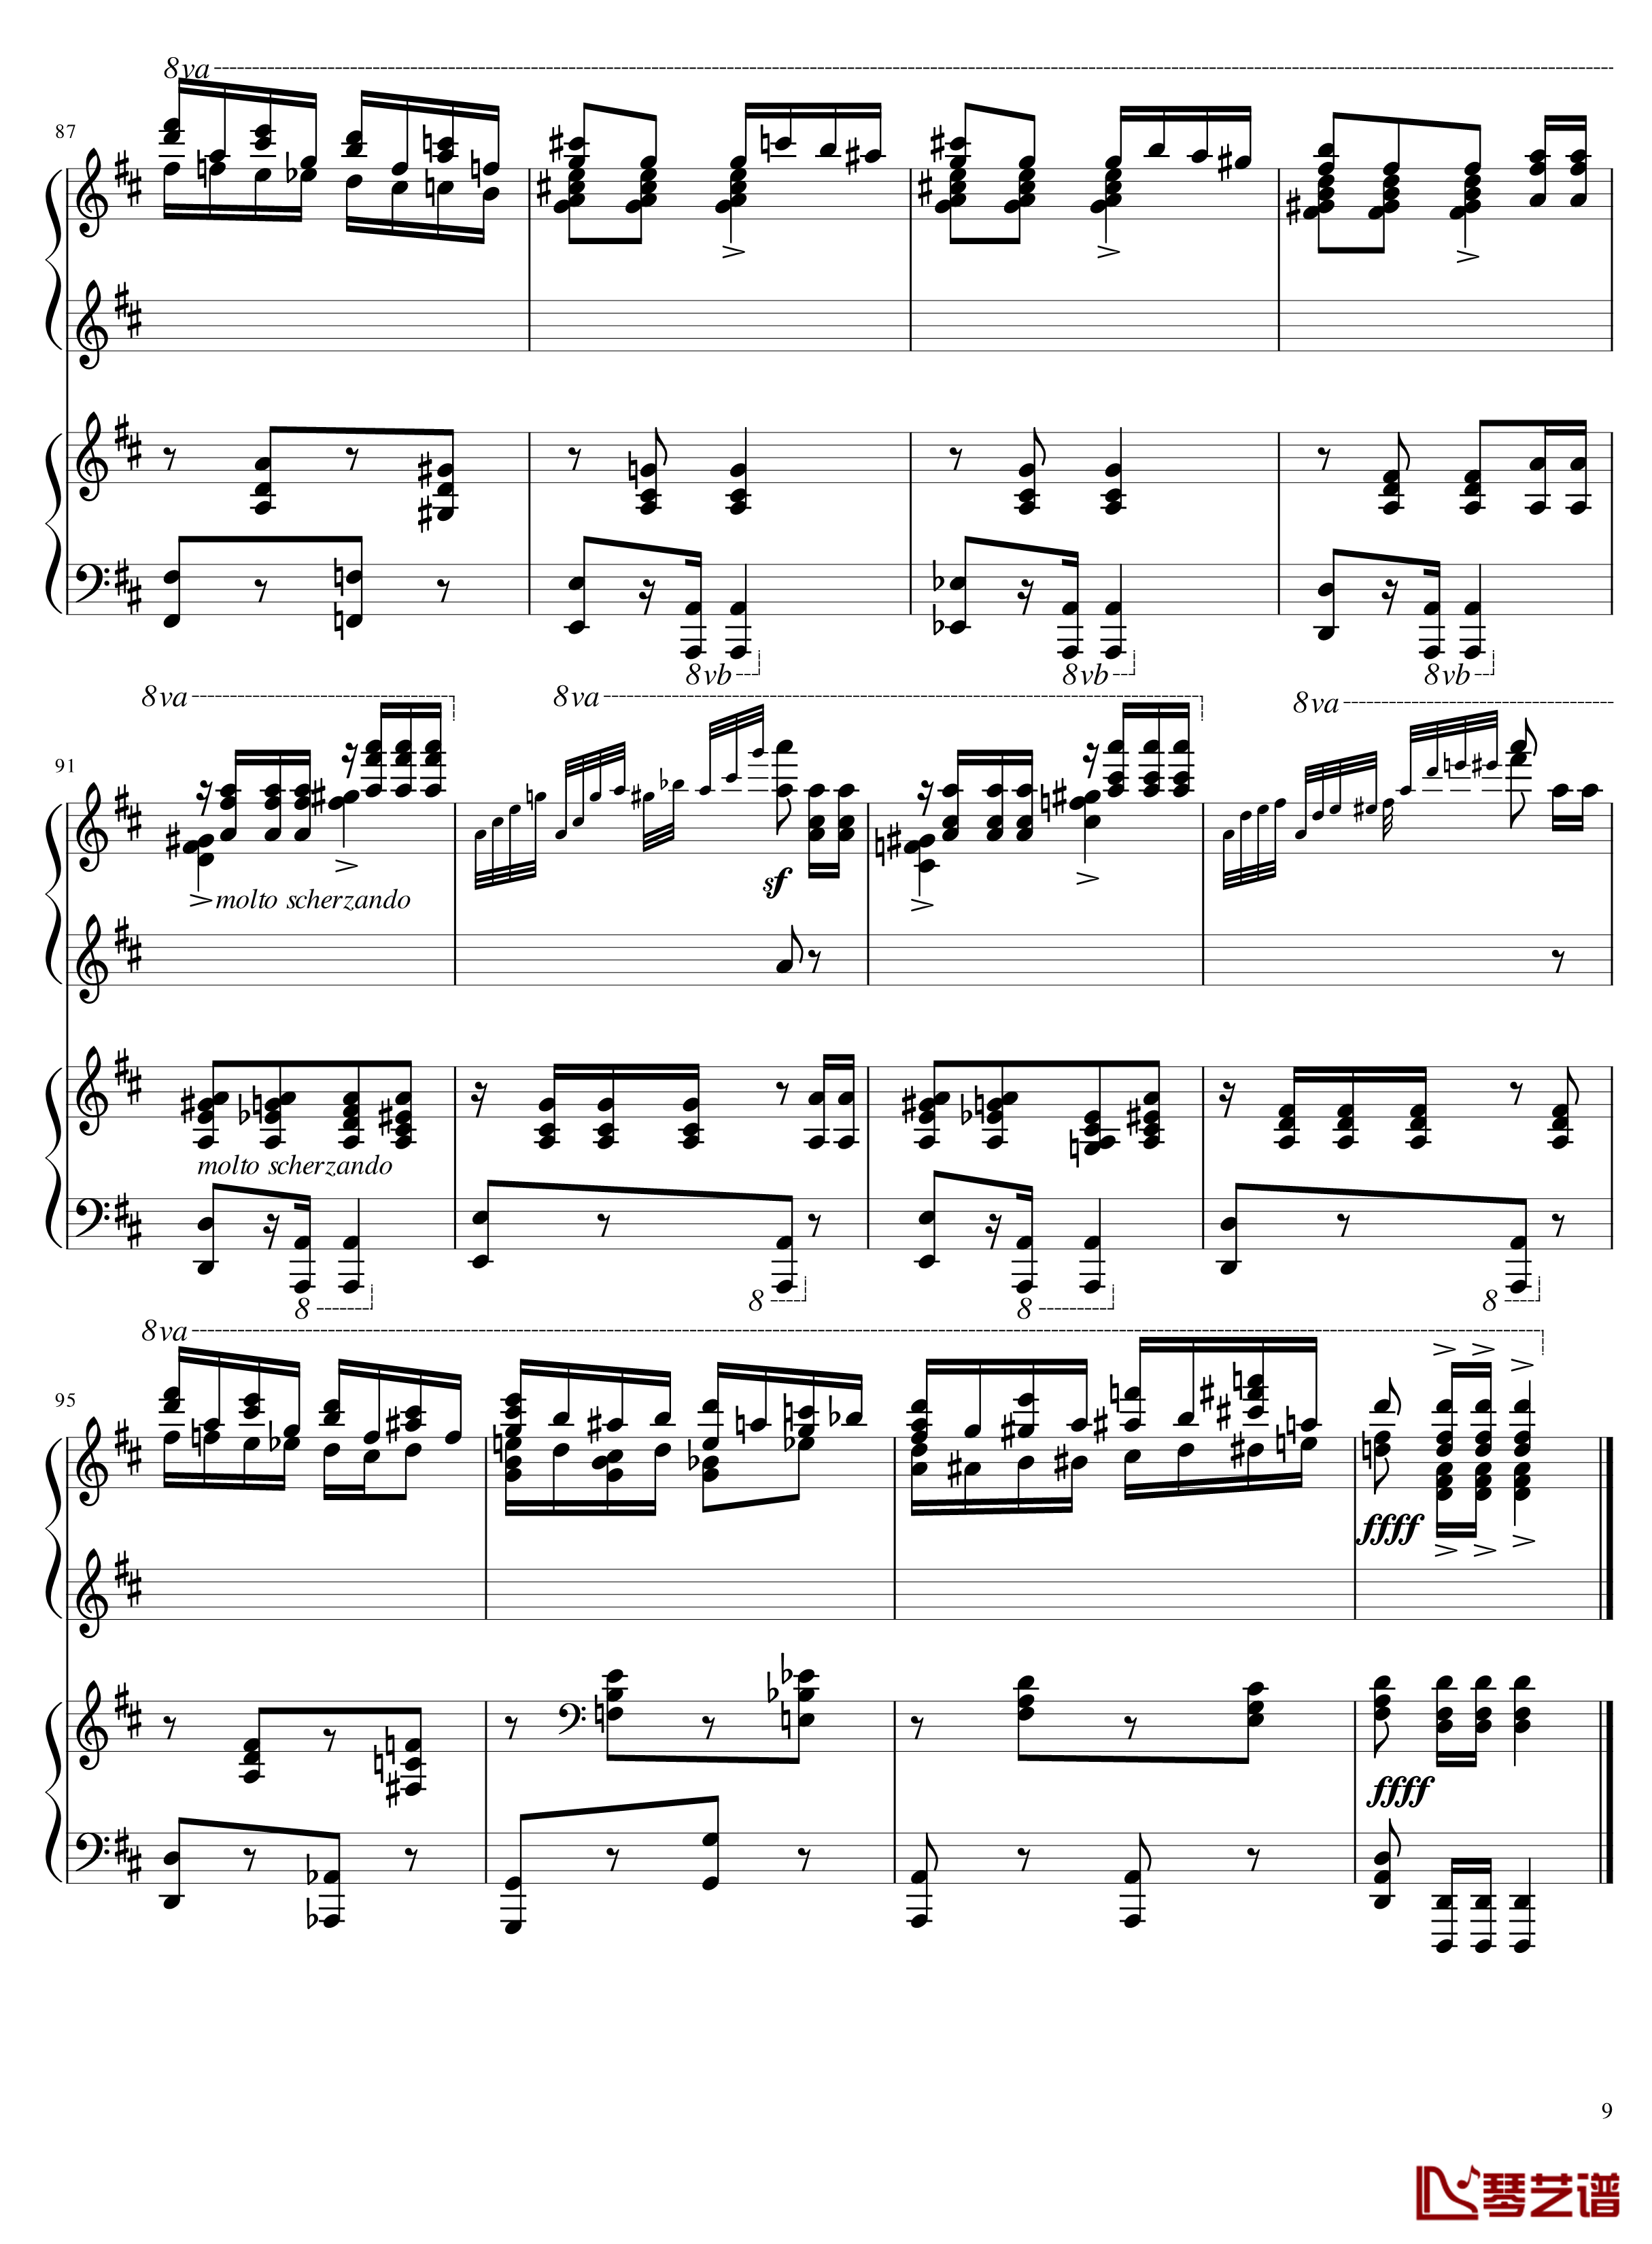 Italian Polka钢琴谱-意大利波尔卡-拉赫马尼若夫9